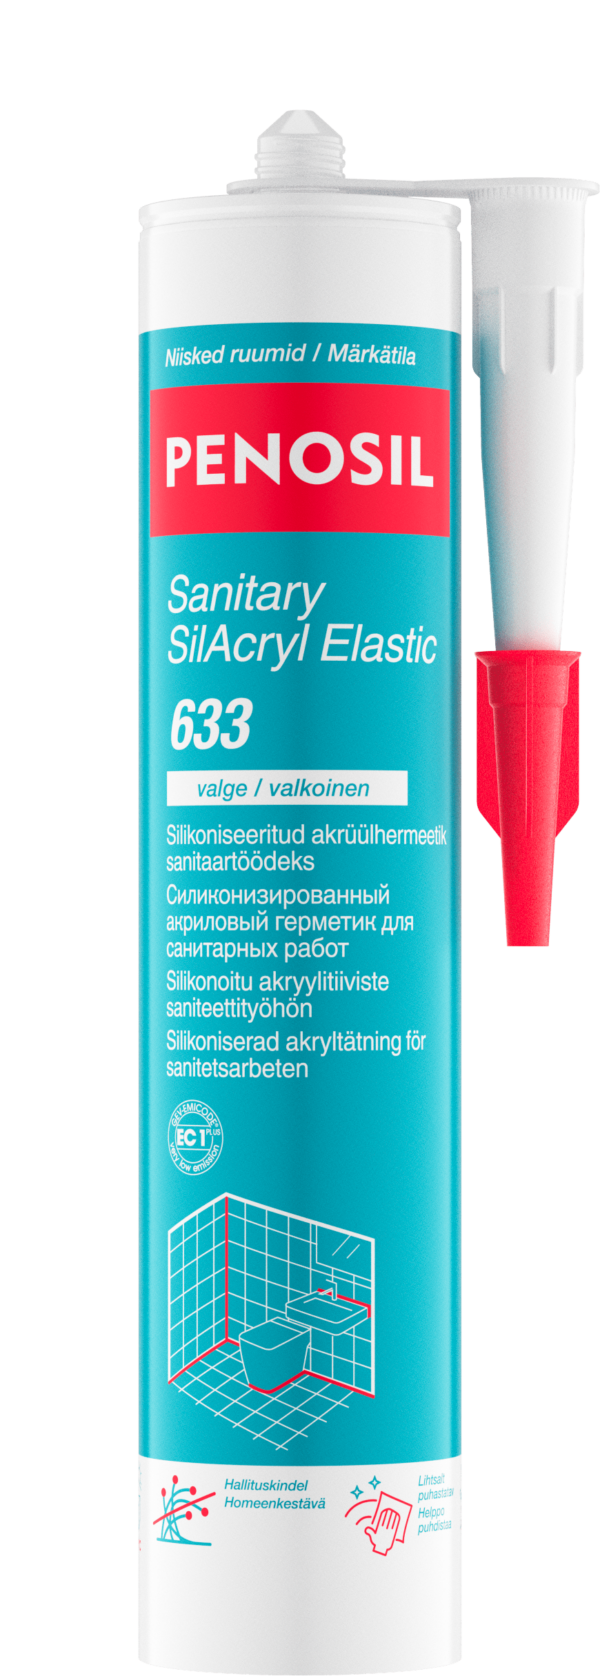 PENOSIL Sanitary SilAcryl Elastic 633 silikooniseeritud sanitaarakrüül